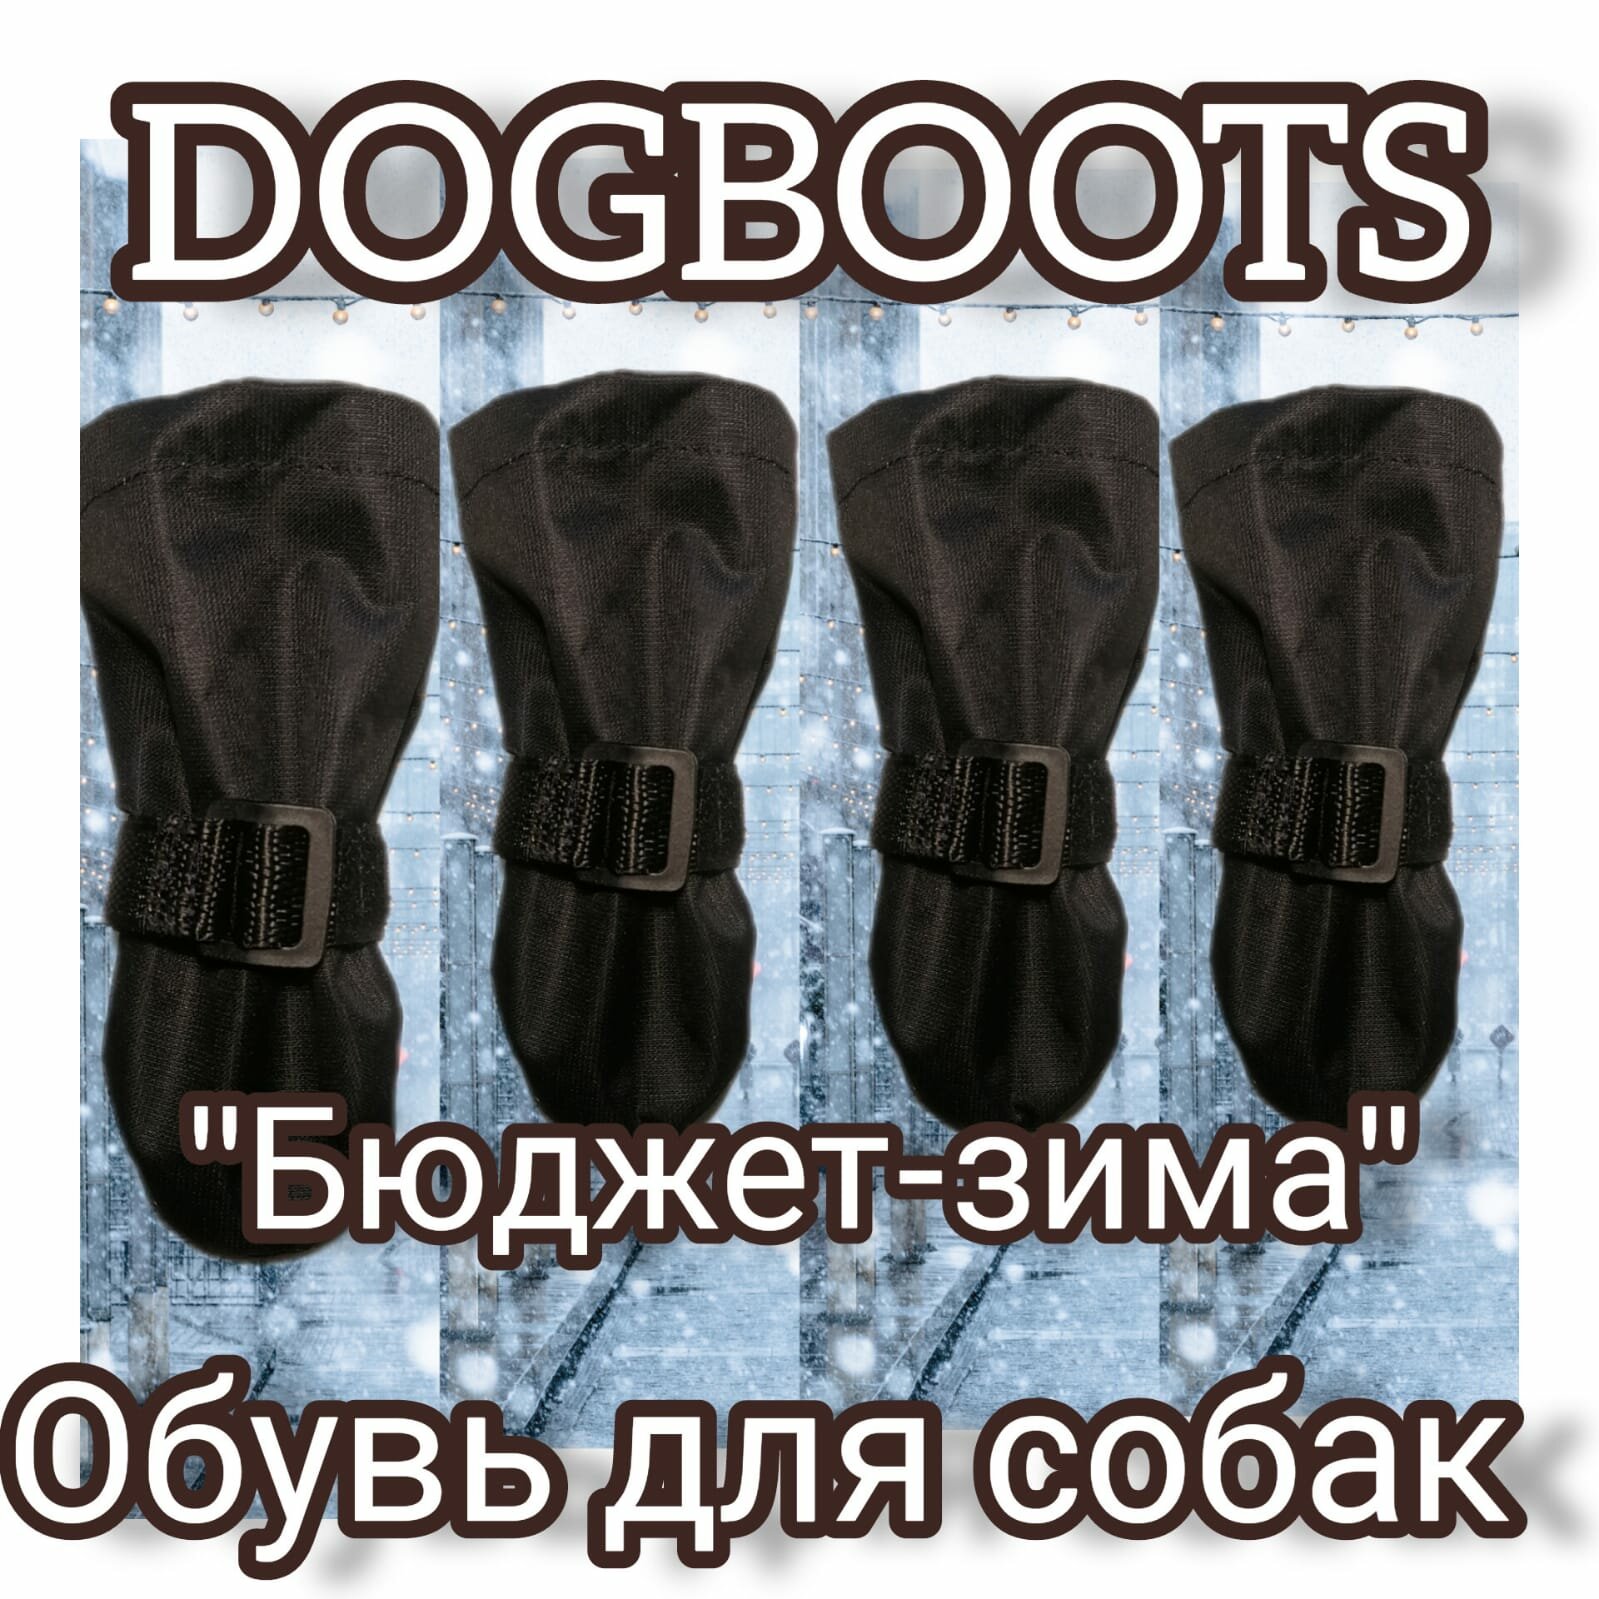 "Зимние ботинки для собак" - бюджетная модель от бренда Dogboots №5, черные, L